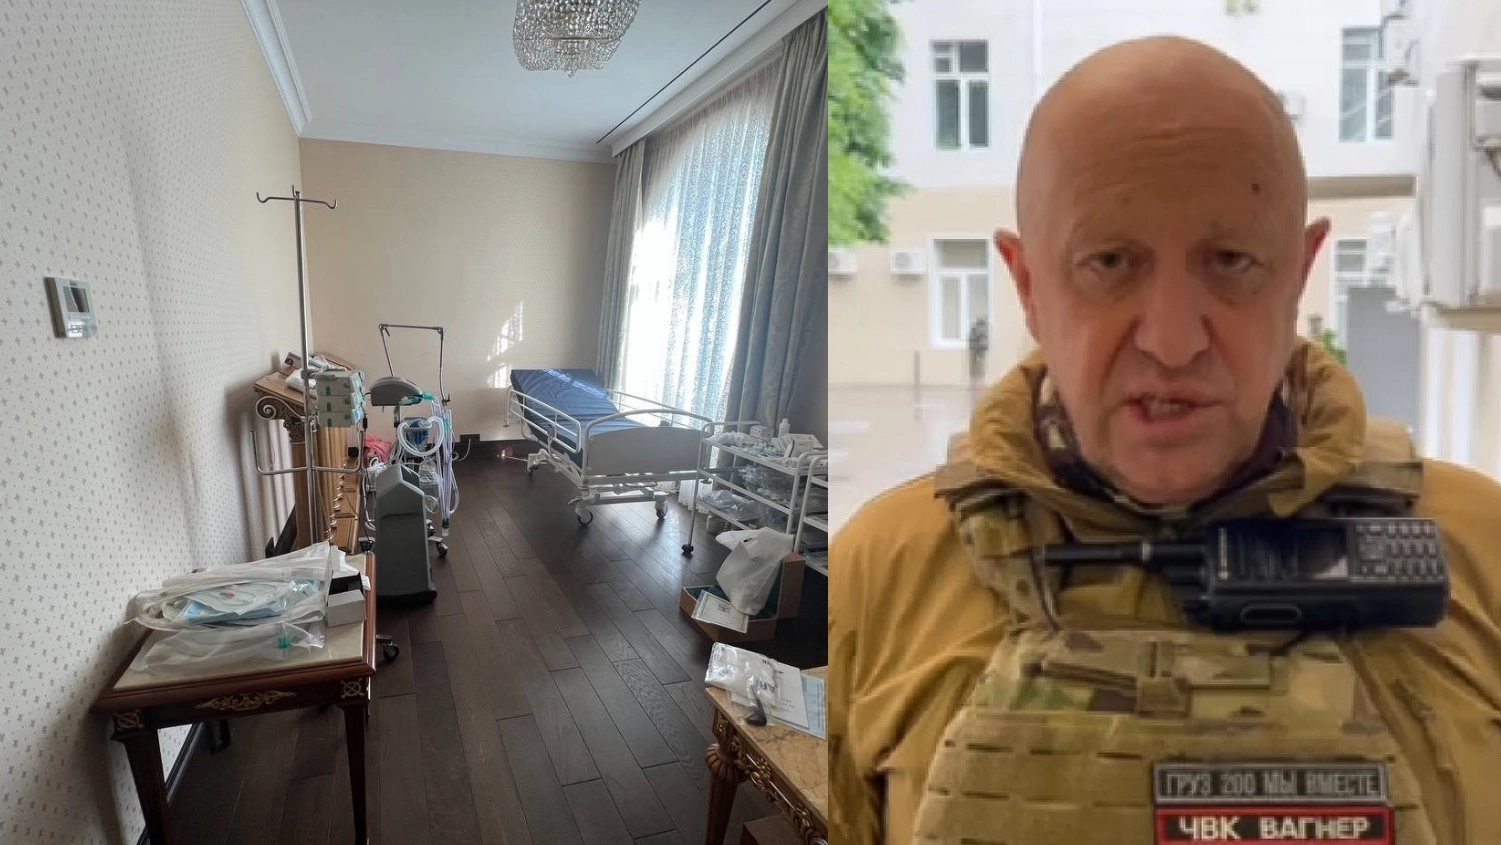 La stanza con un letto antidecupito che si troverebbe nella villa di Prigozhin a San Pietroburgo